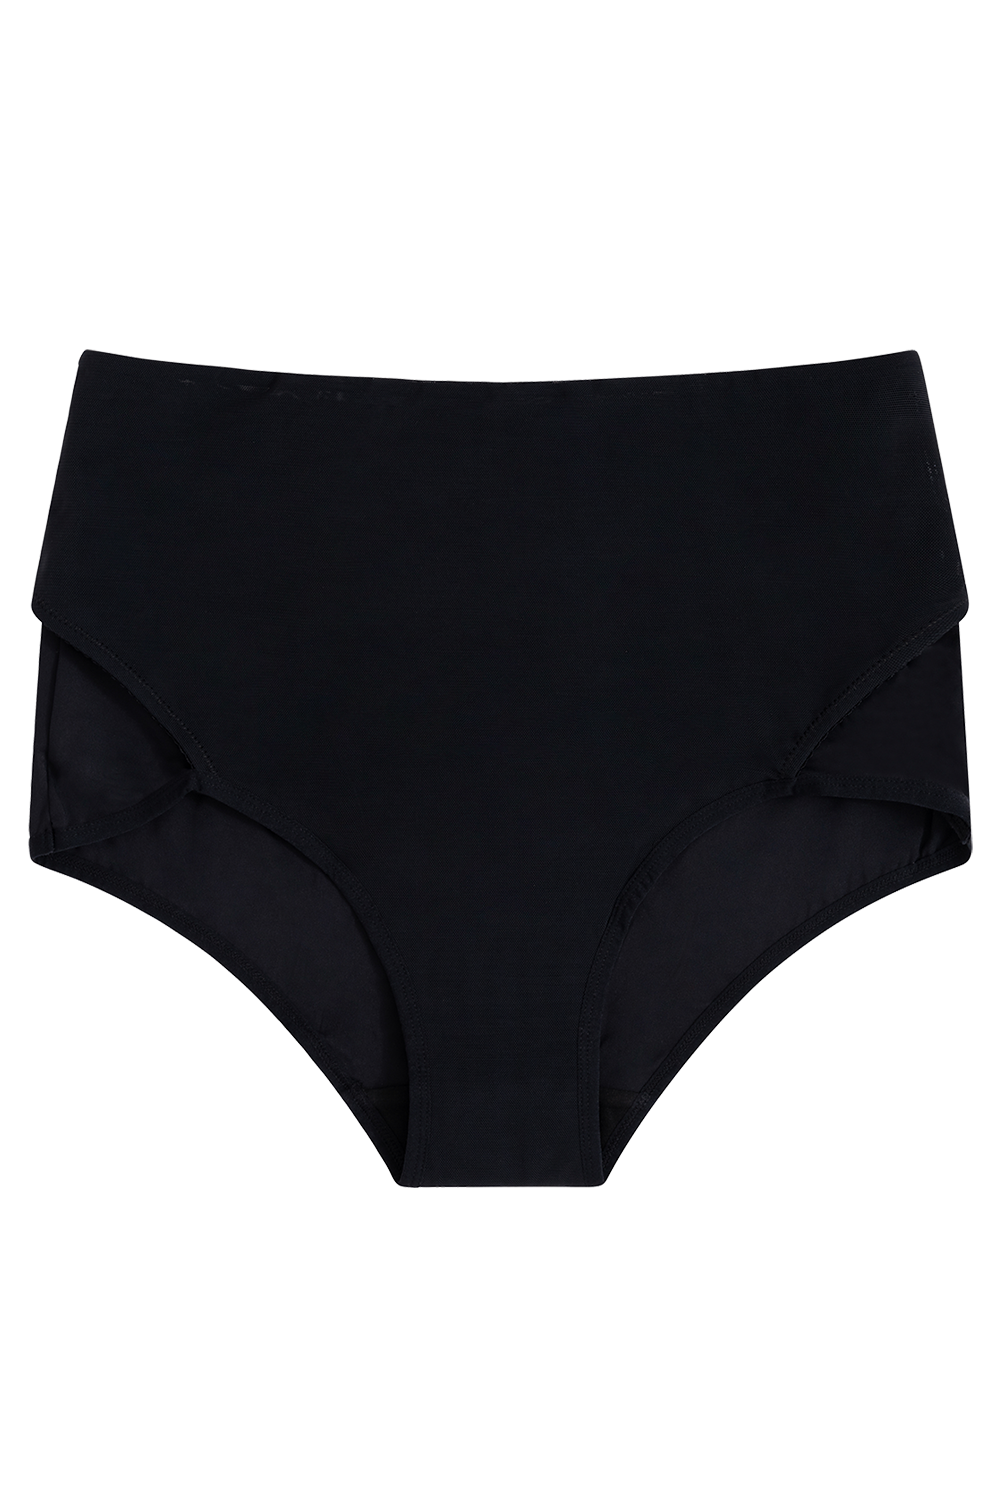 Hipster Postpartum Underwear – Archway Boutique